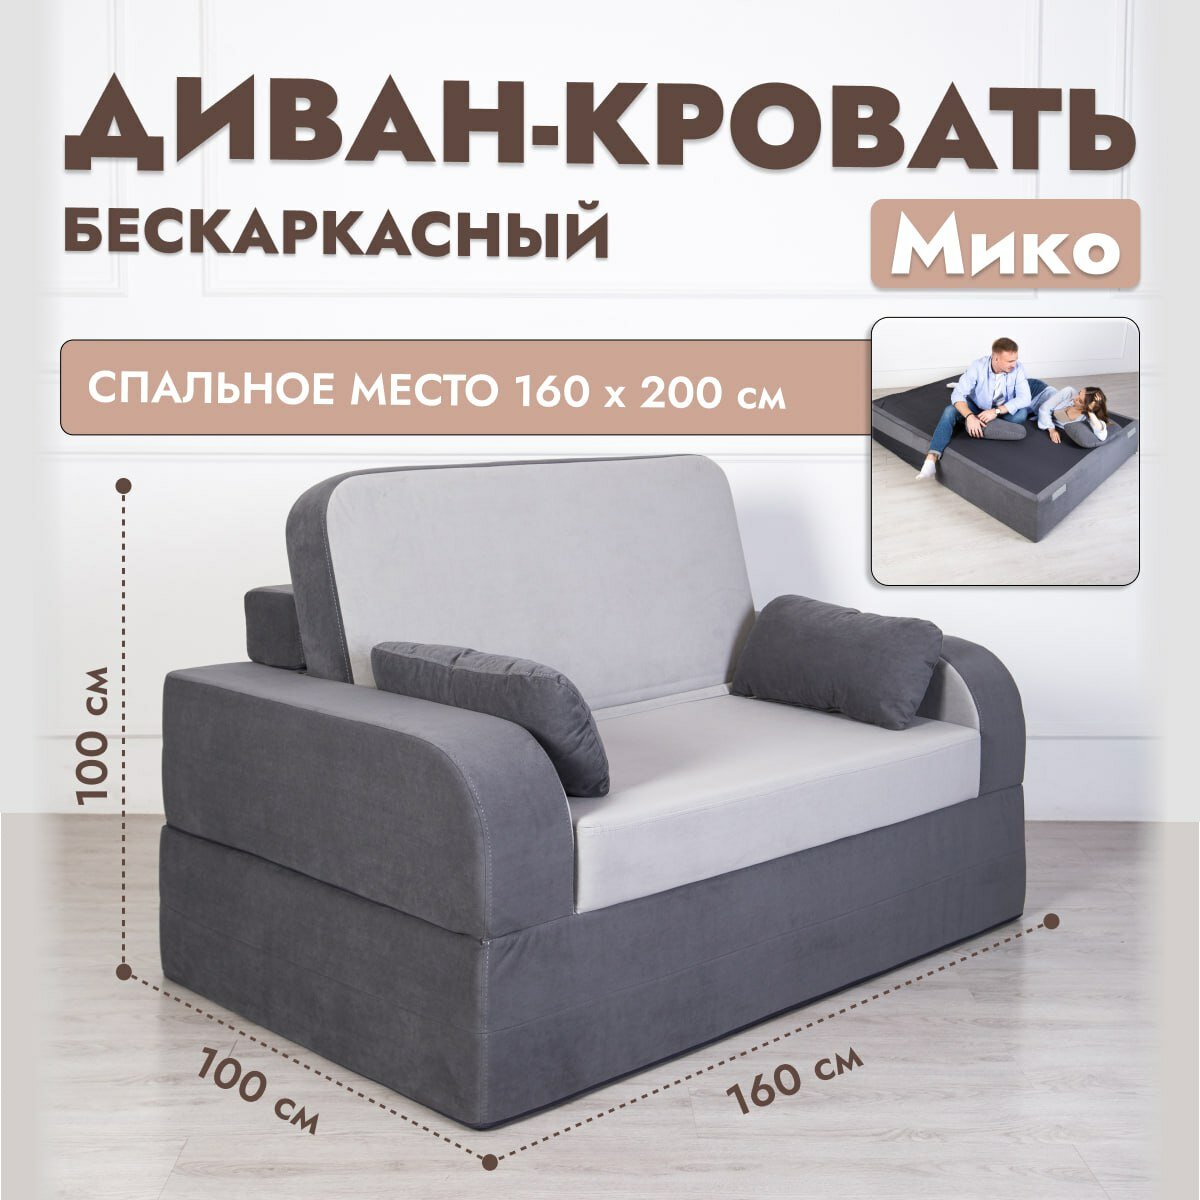 Раскладной диван кровать трансформер Мико 160*100 см, от Div-one, бескаркасный, двухспальный, спальное место 200*160 см, серый